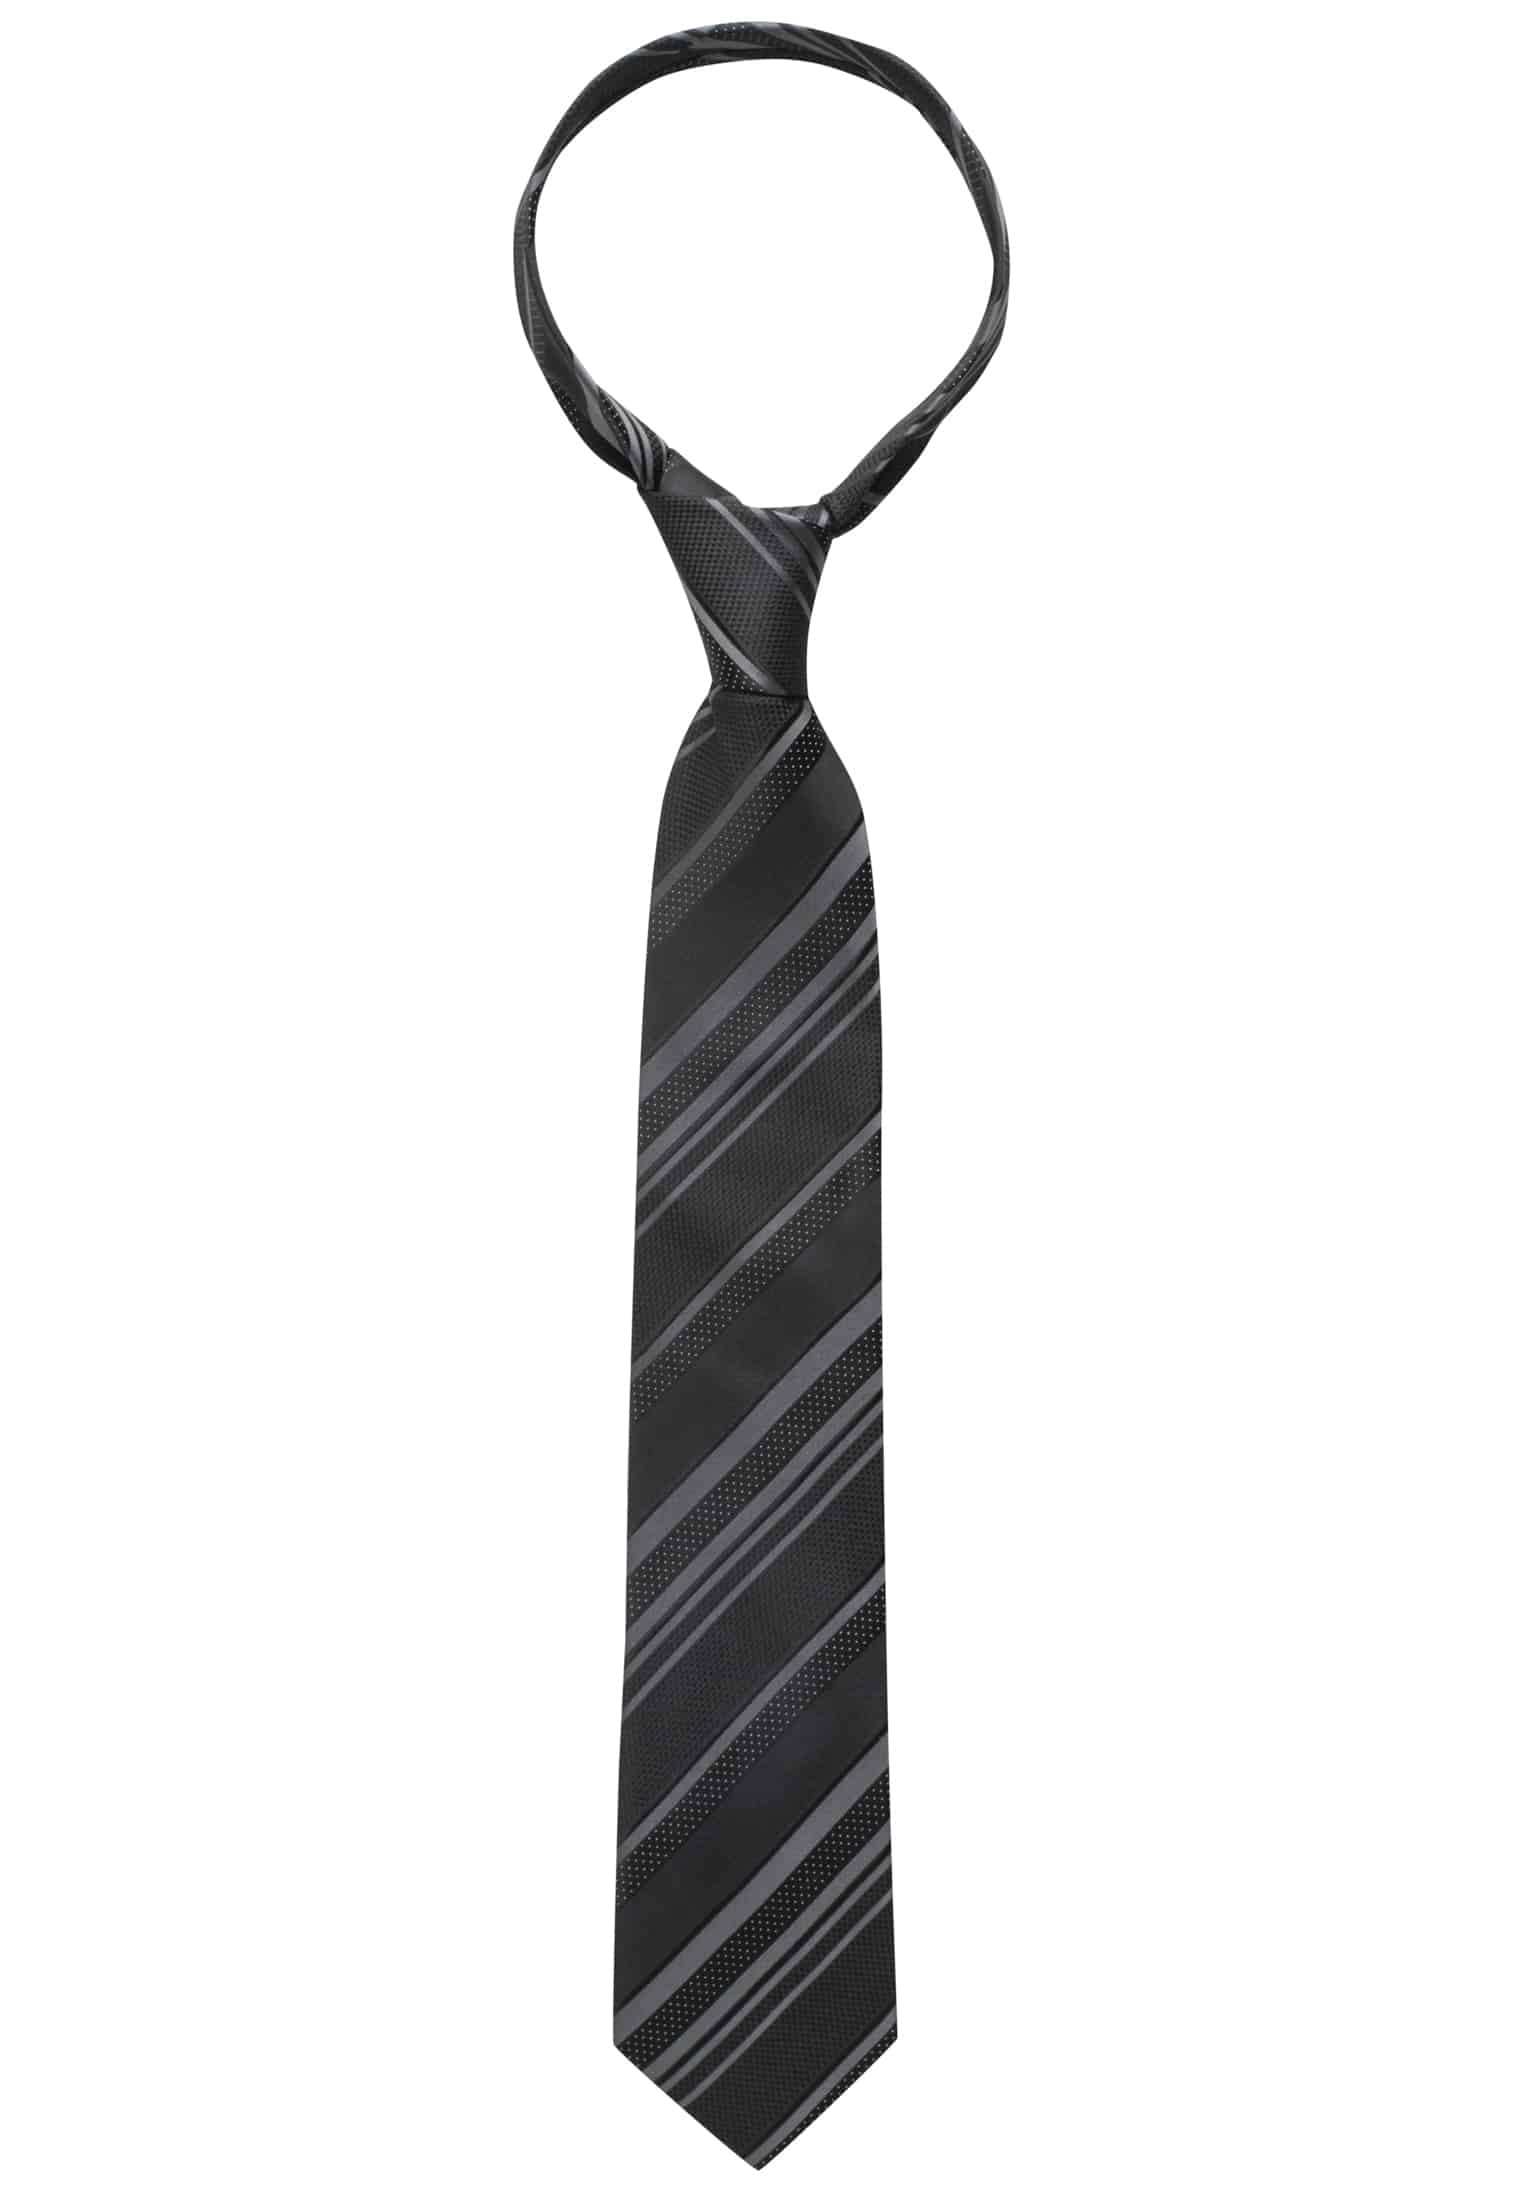 Krawatte in schwarz gestreift | 142 1AC00408-03-91-142 | schwarz 